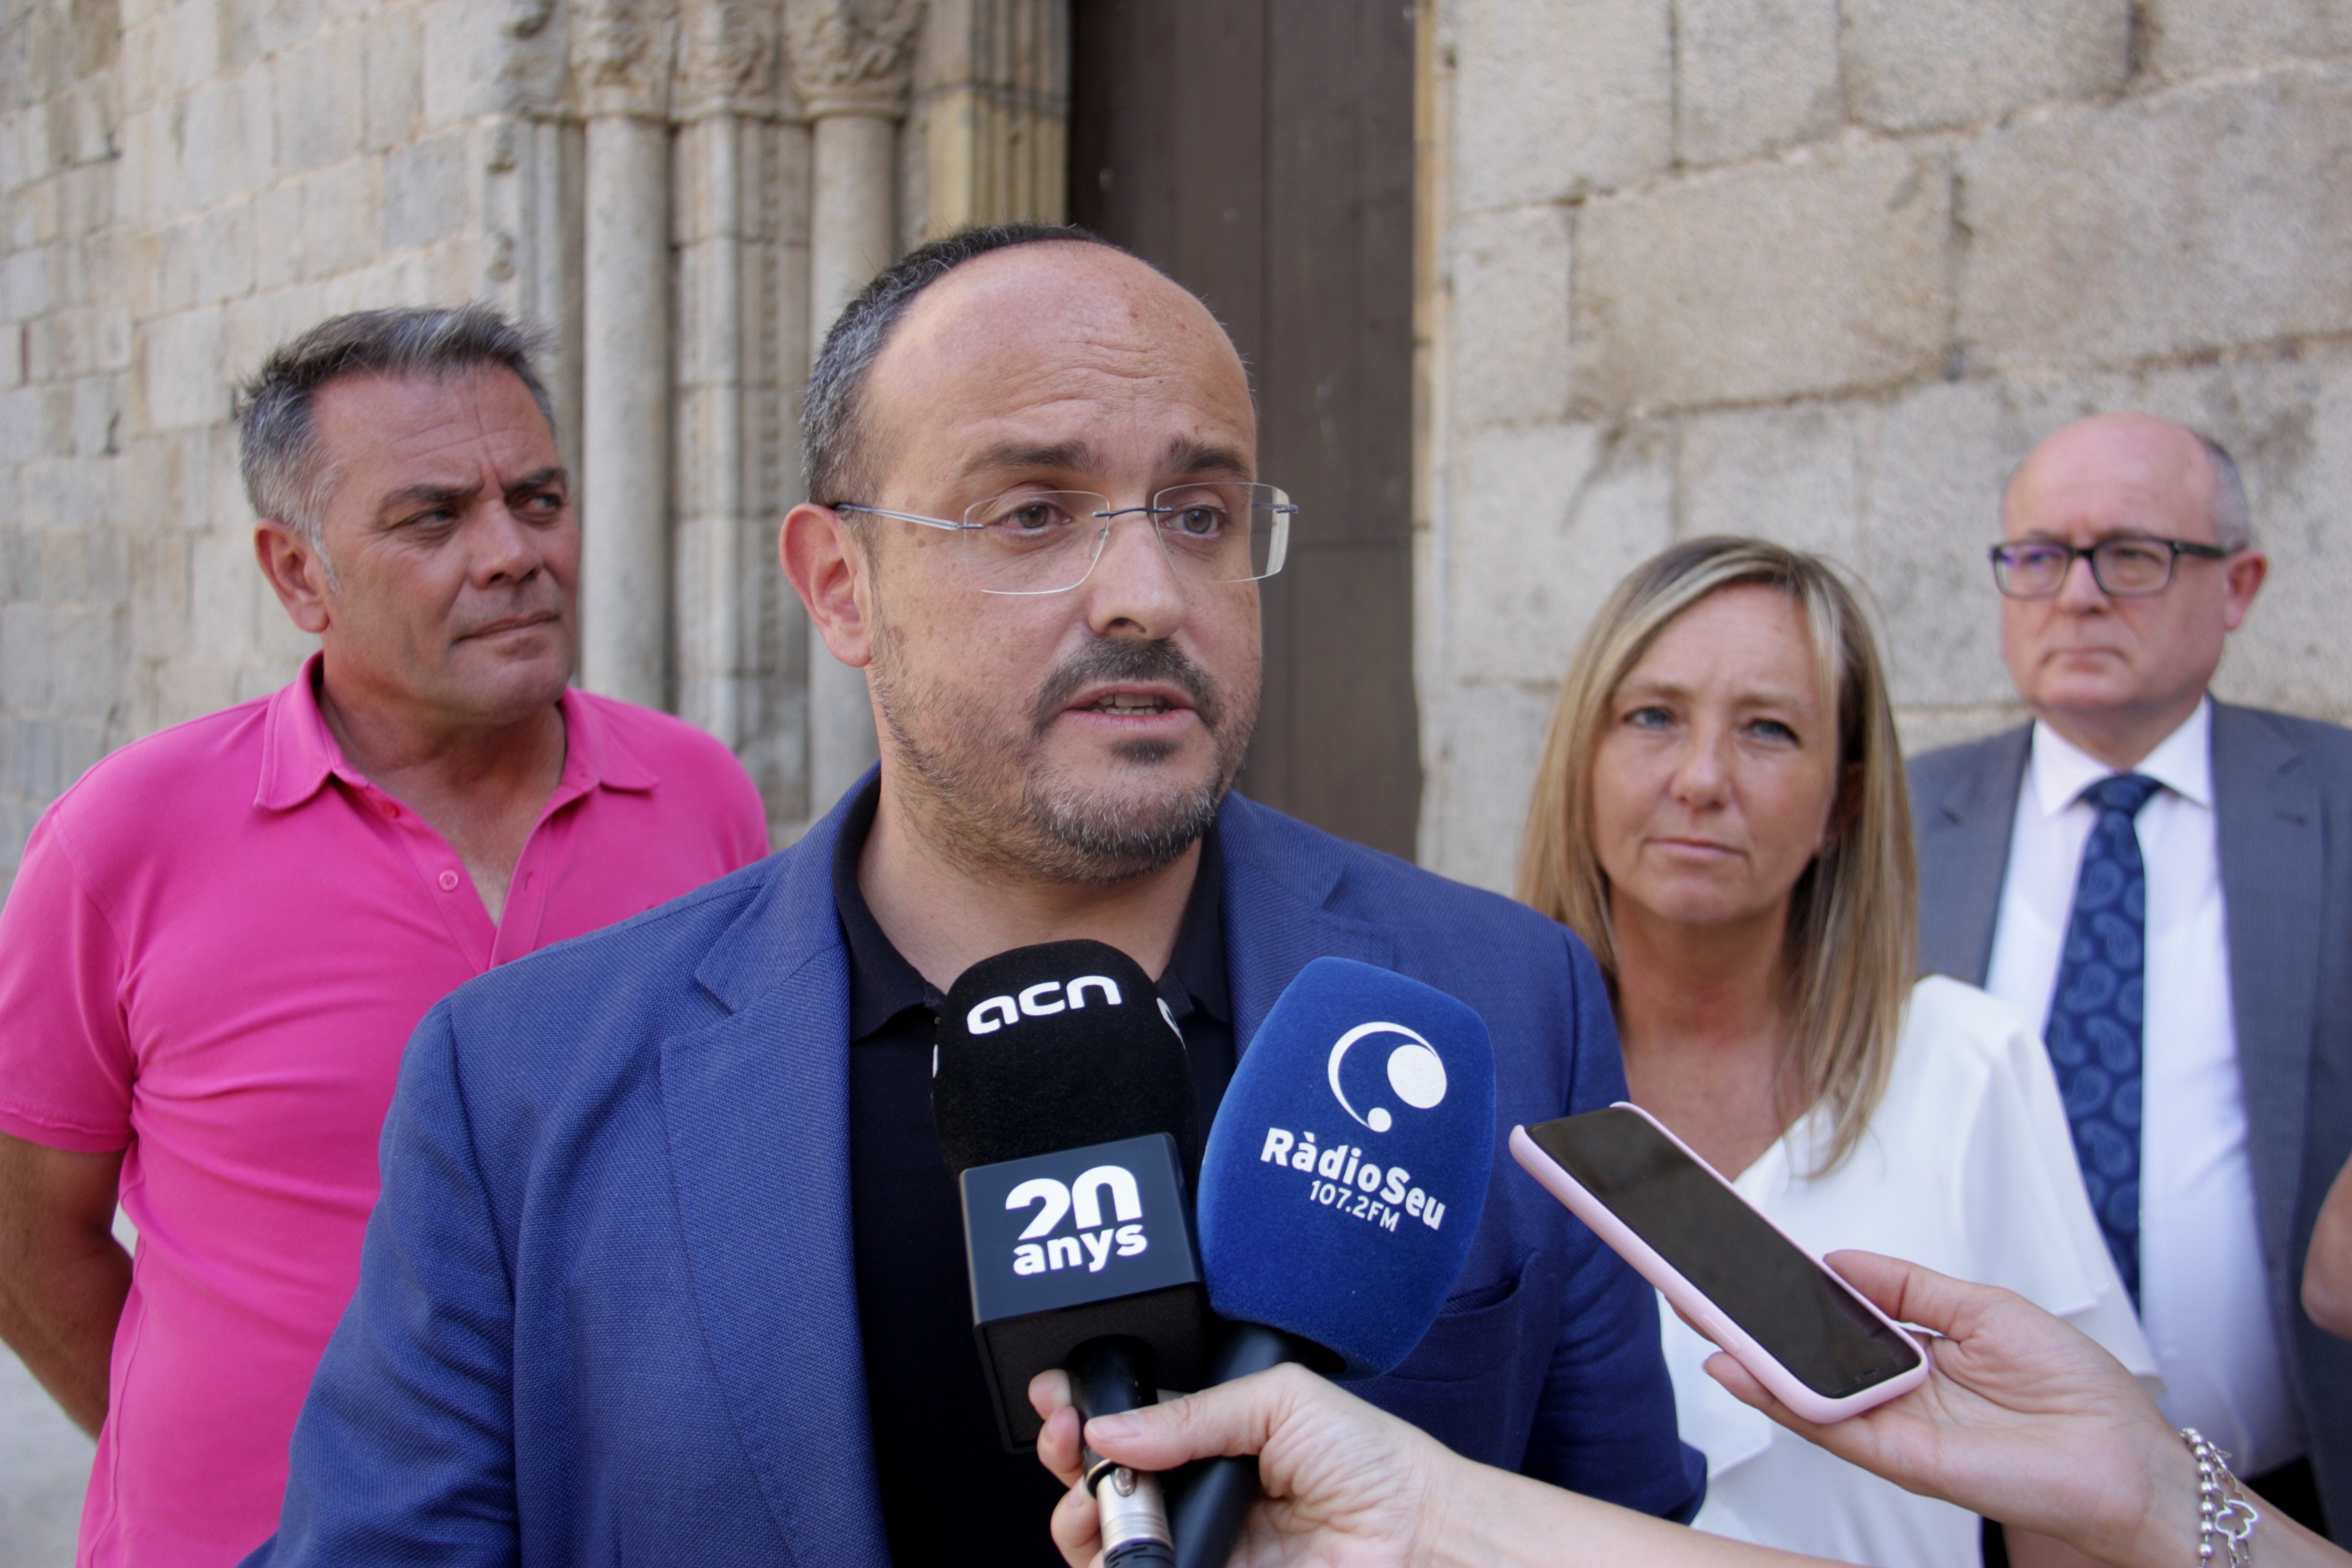 Fernández avisa que Aragonès "farà el rondinaire" en la compareixença de dimecres